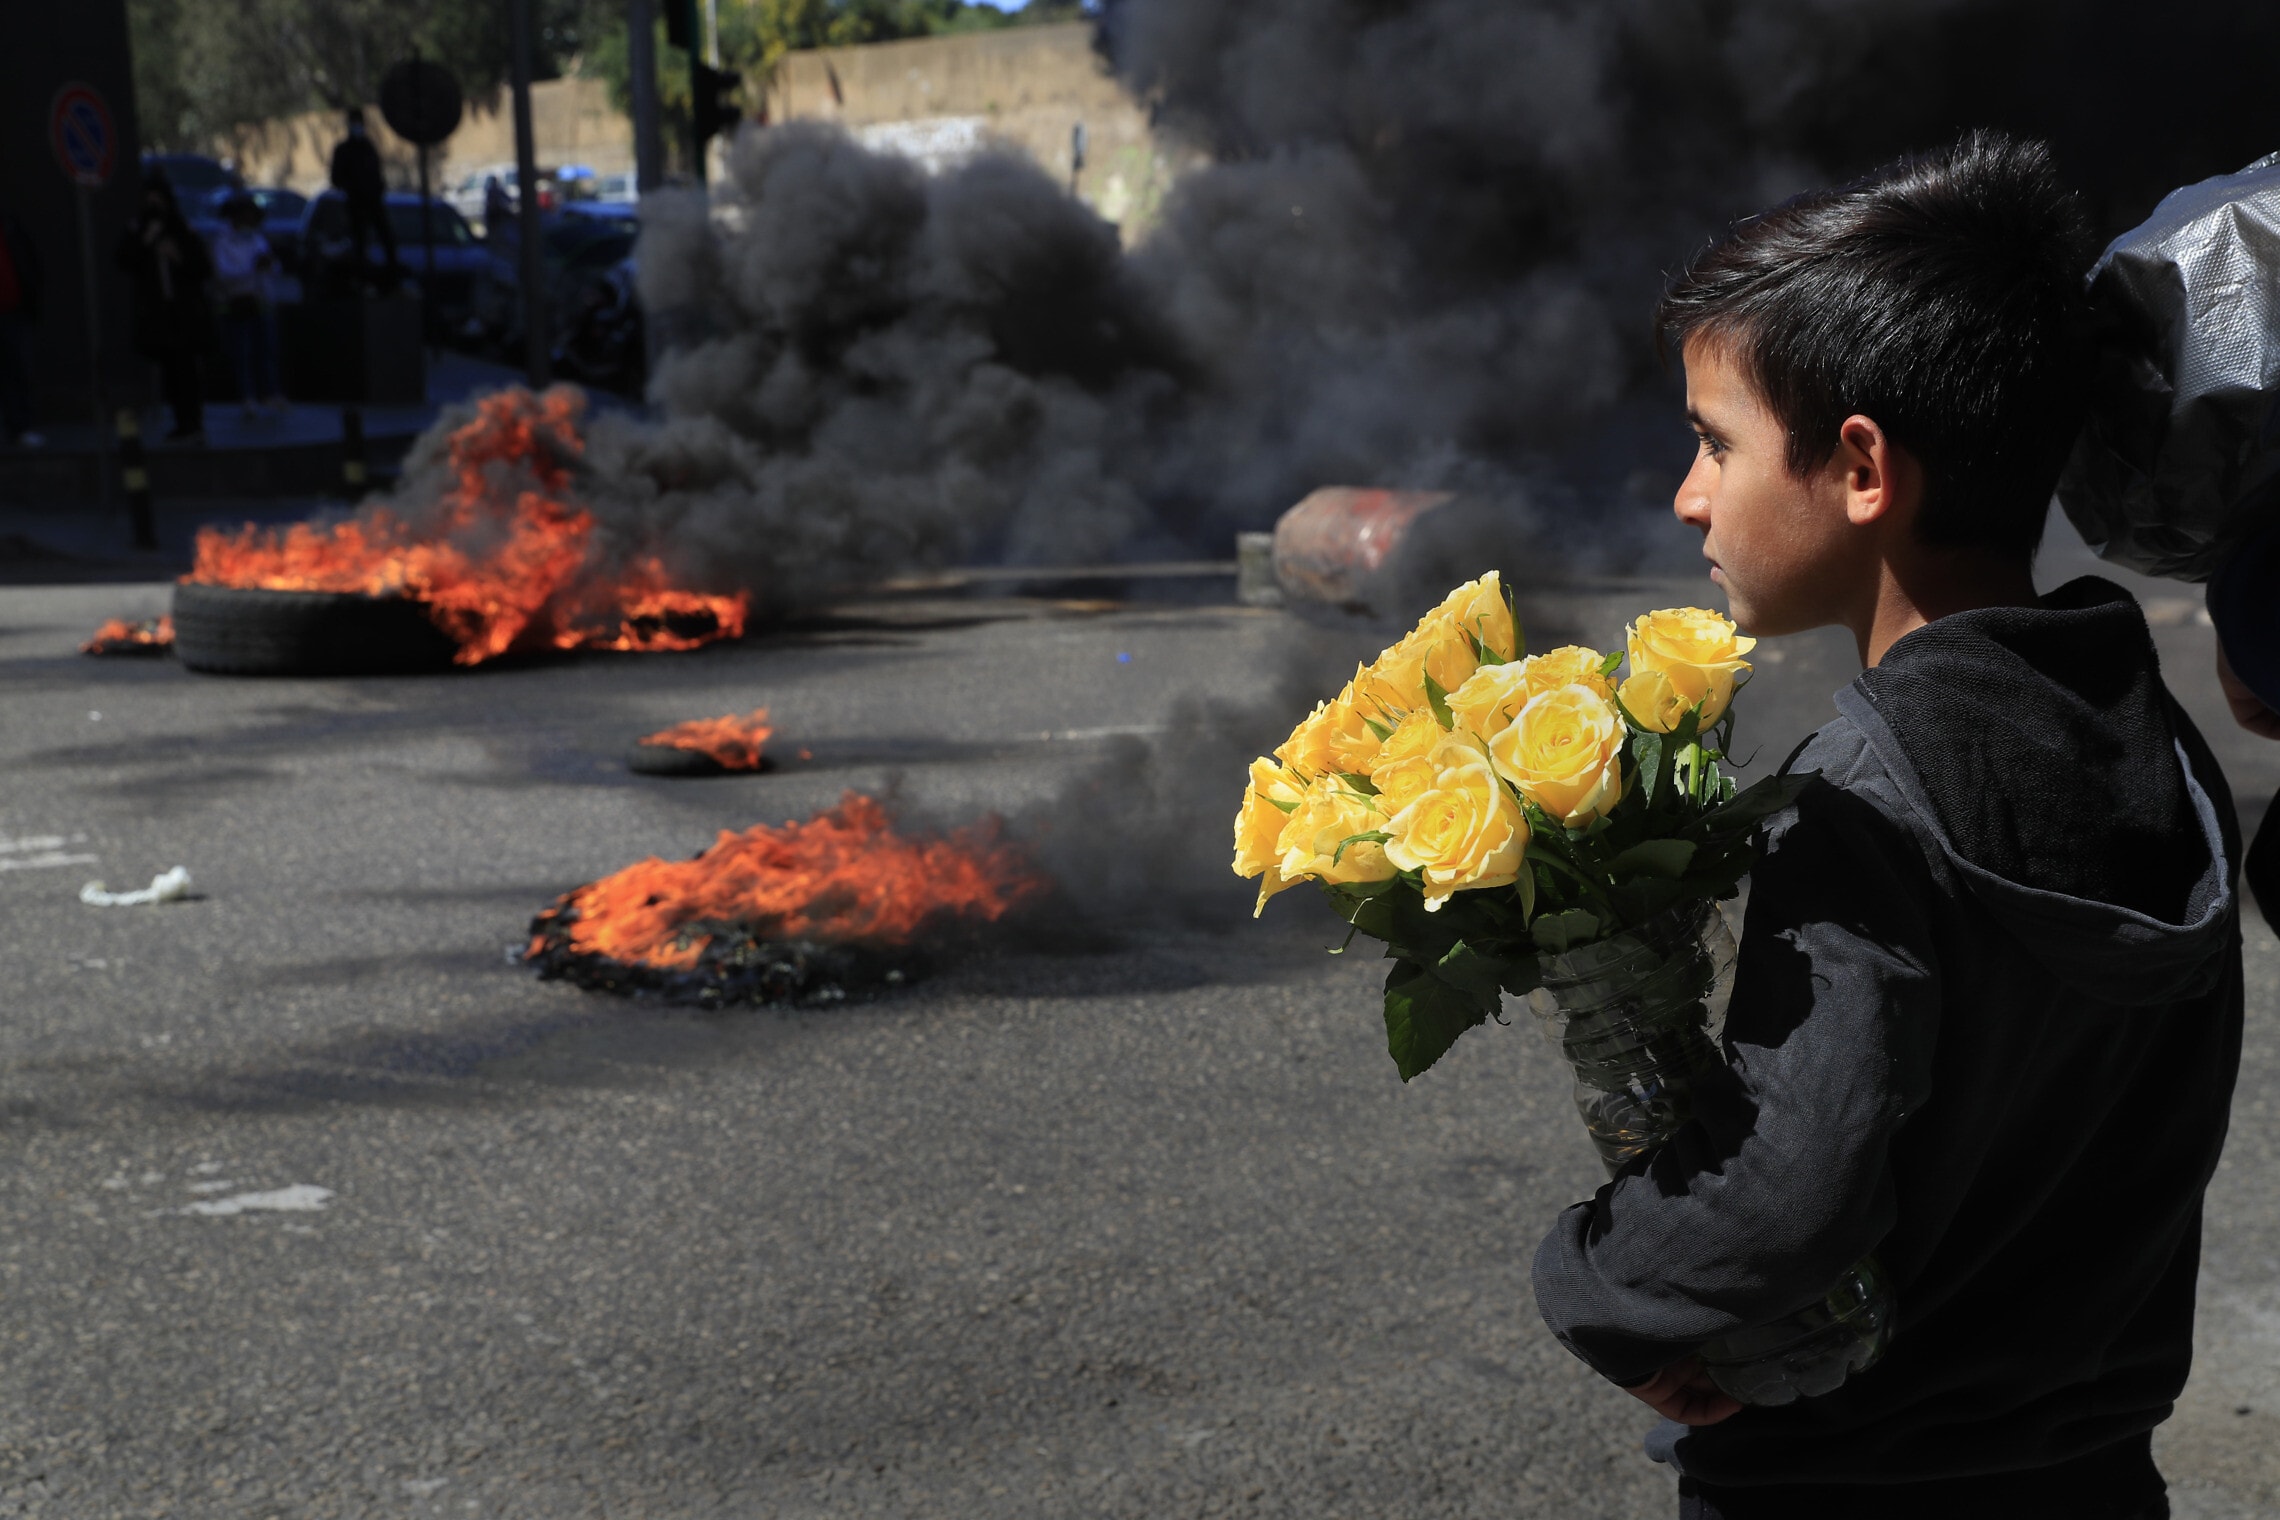 ילד מוכר פרחים מביט לעבר המפגינים ששורפים צמיגים במחאה על עליית המחירים והתרסקות הכלכלה הלבנונית, ביירות, 16 במרץ 2921 (צילום: AP Photo/Hussein Malla)